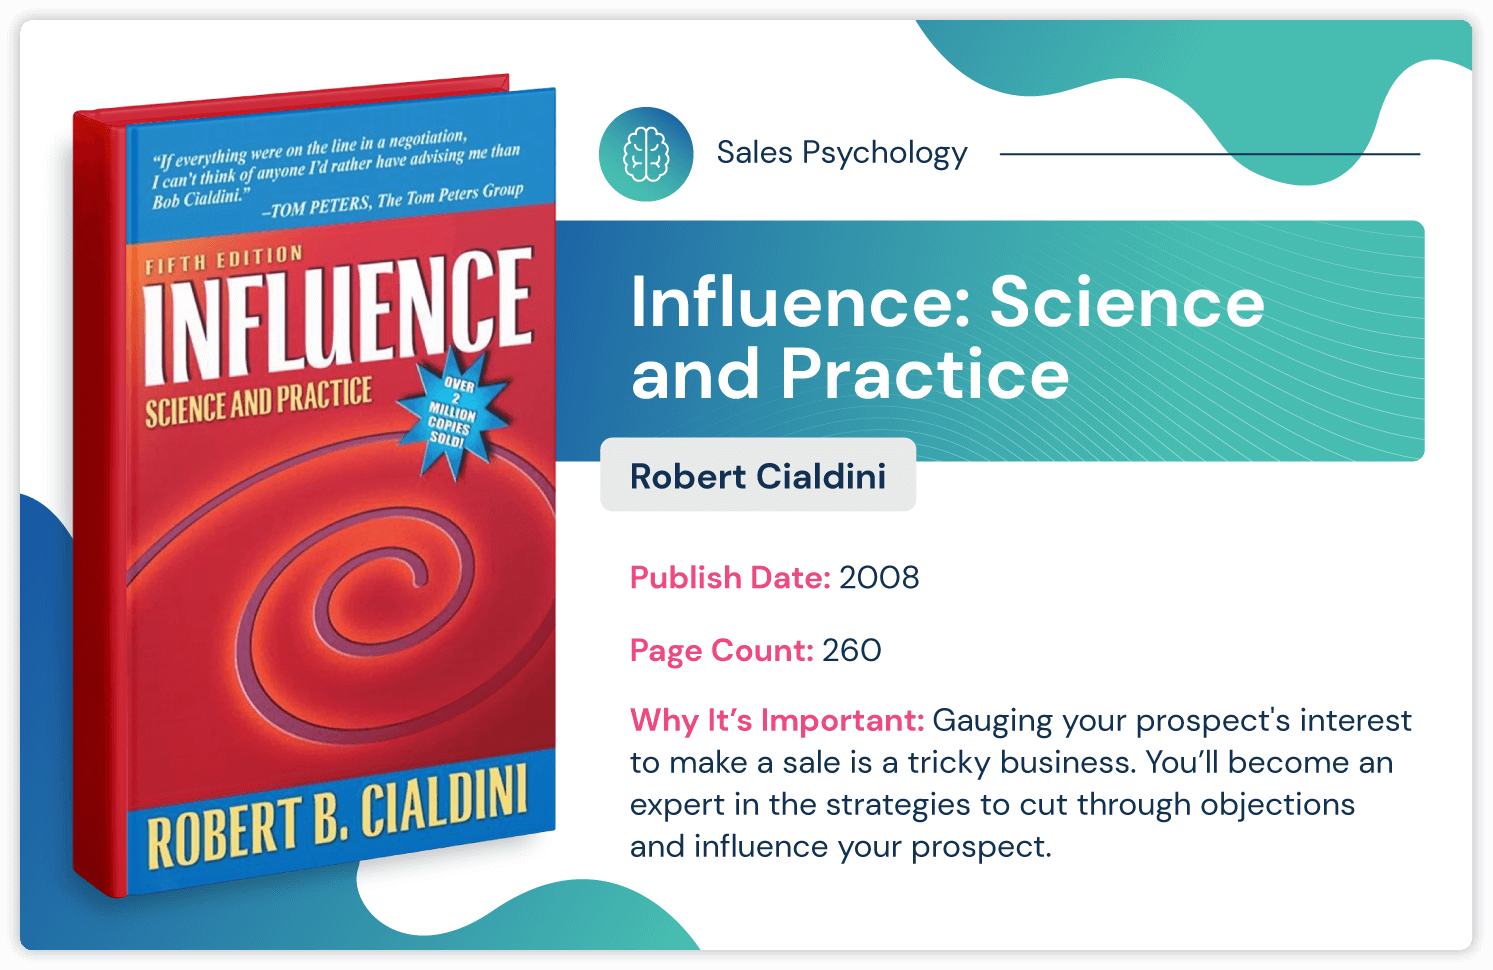 Książka o psychologii sprzedaży zatytułowana „Wpływ: nauka i praktyka” autorstwa Roberta Cialdiniego o tym, jak wpływać na strategię sprzedaży; opublikowany w 2008 roku i liczy 260 stron.